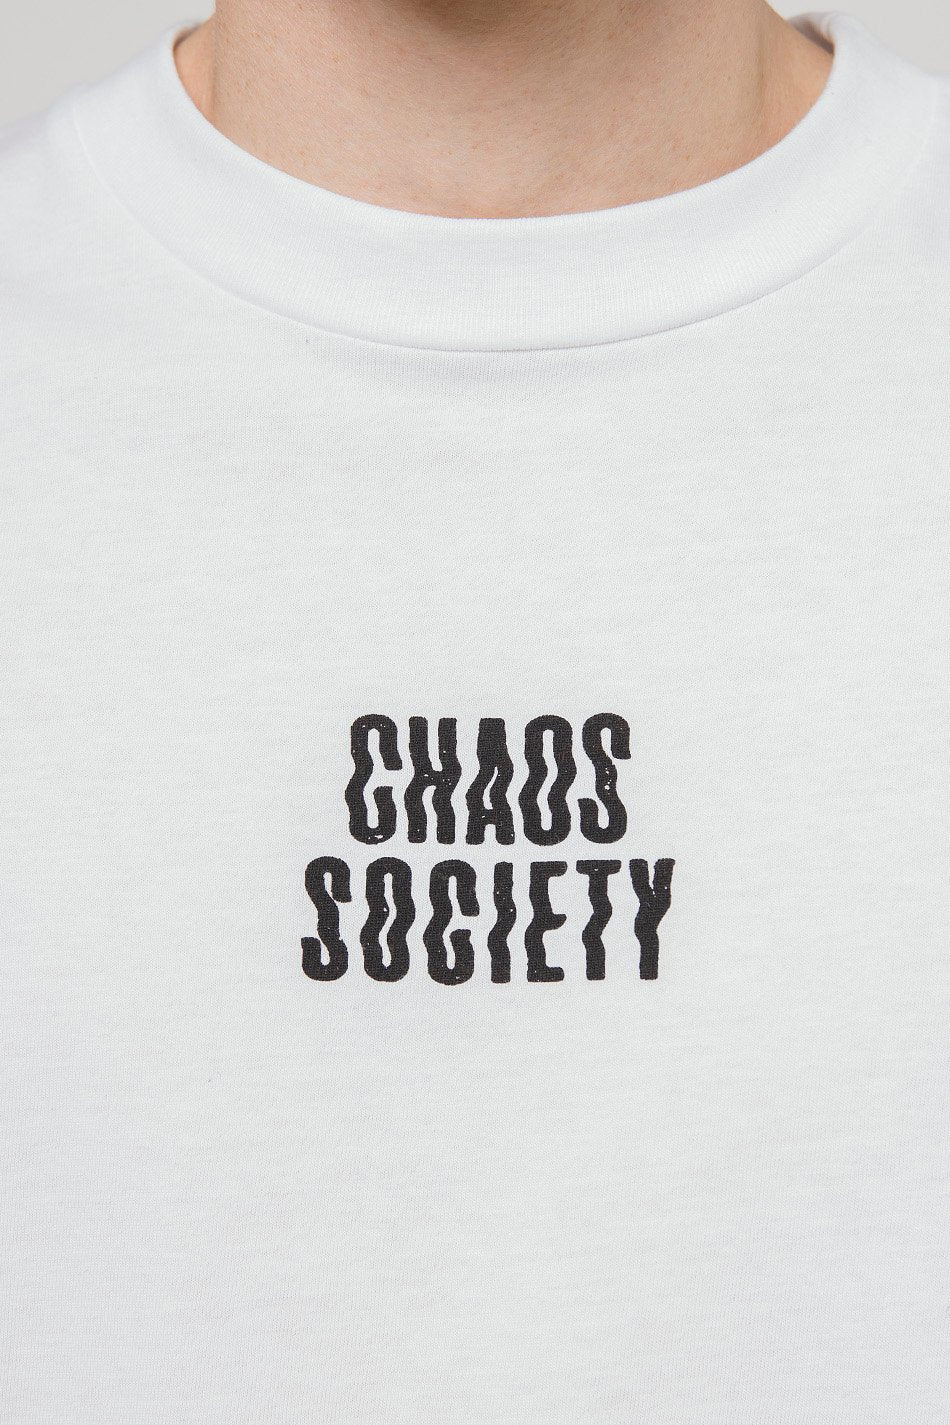 Chaos Society T-Shirt